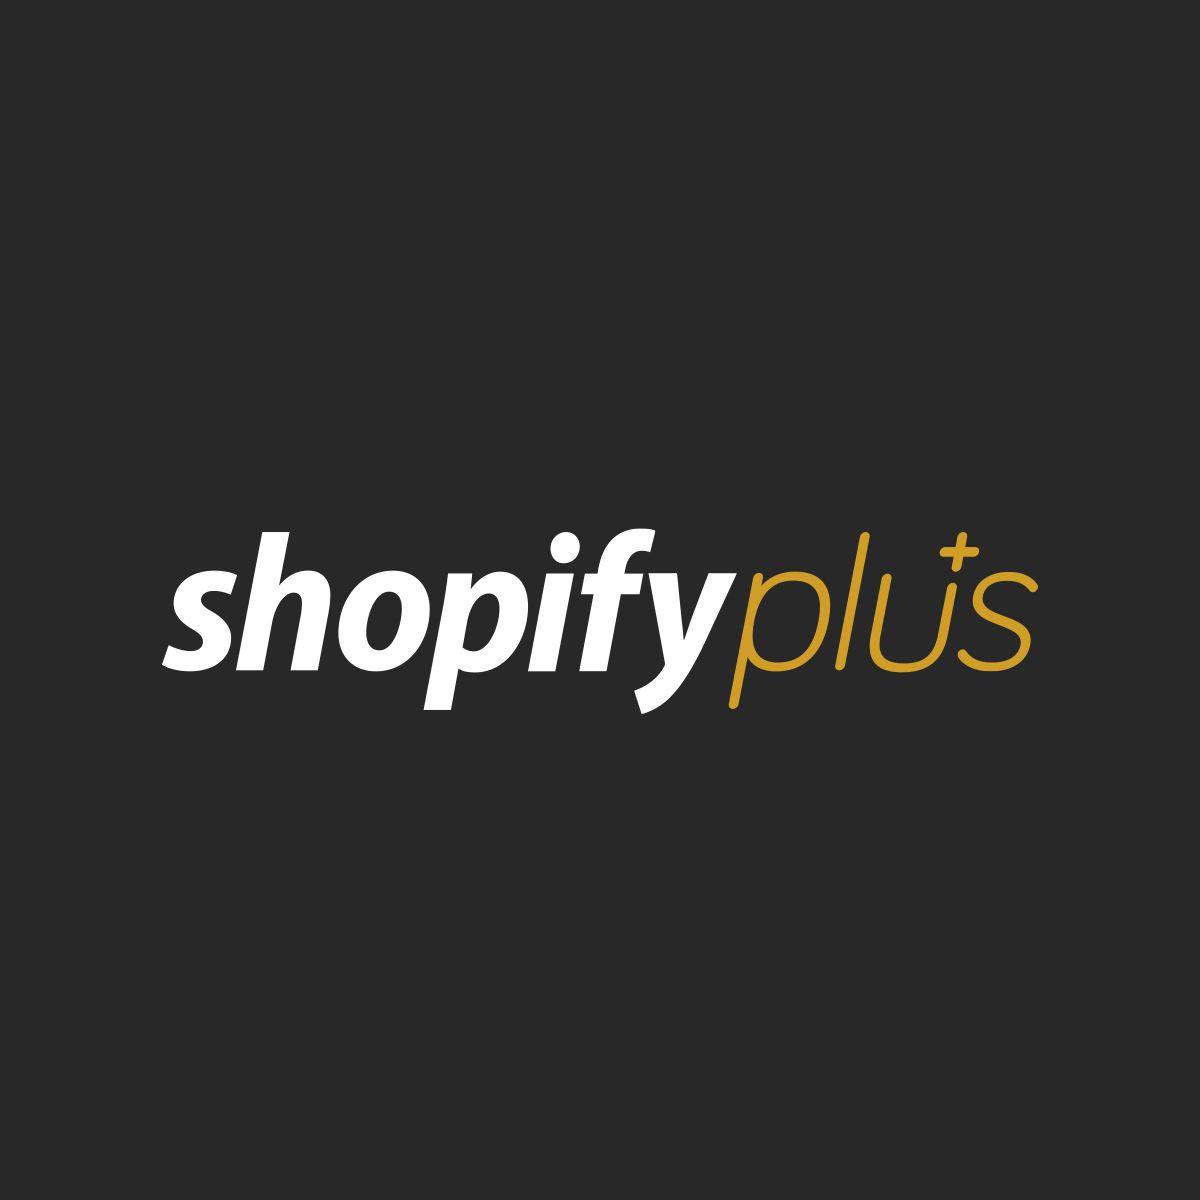 Shopify Plus Logo - The Shopify Plus brand